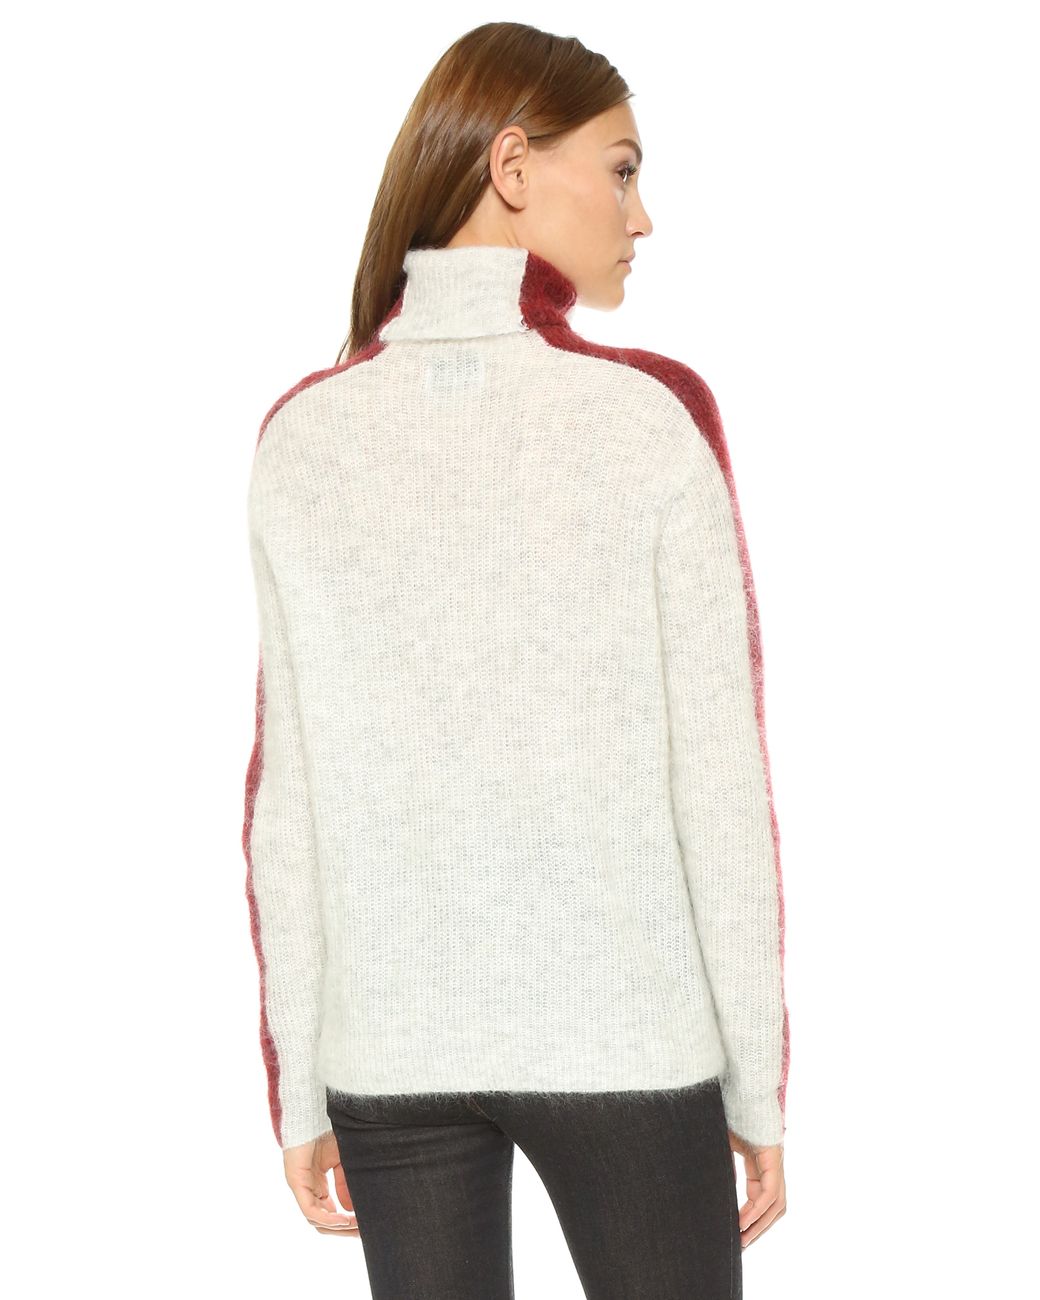 Ganni Evangelista Turtleneck Sweater in White | Lyst